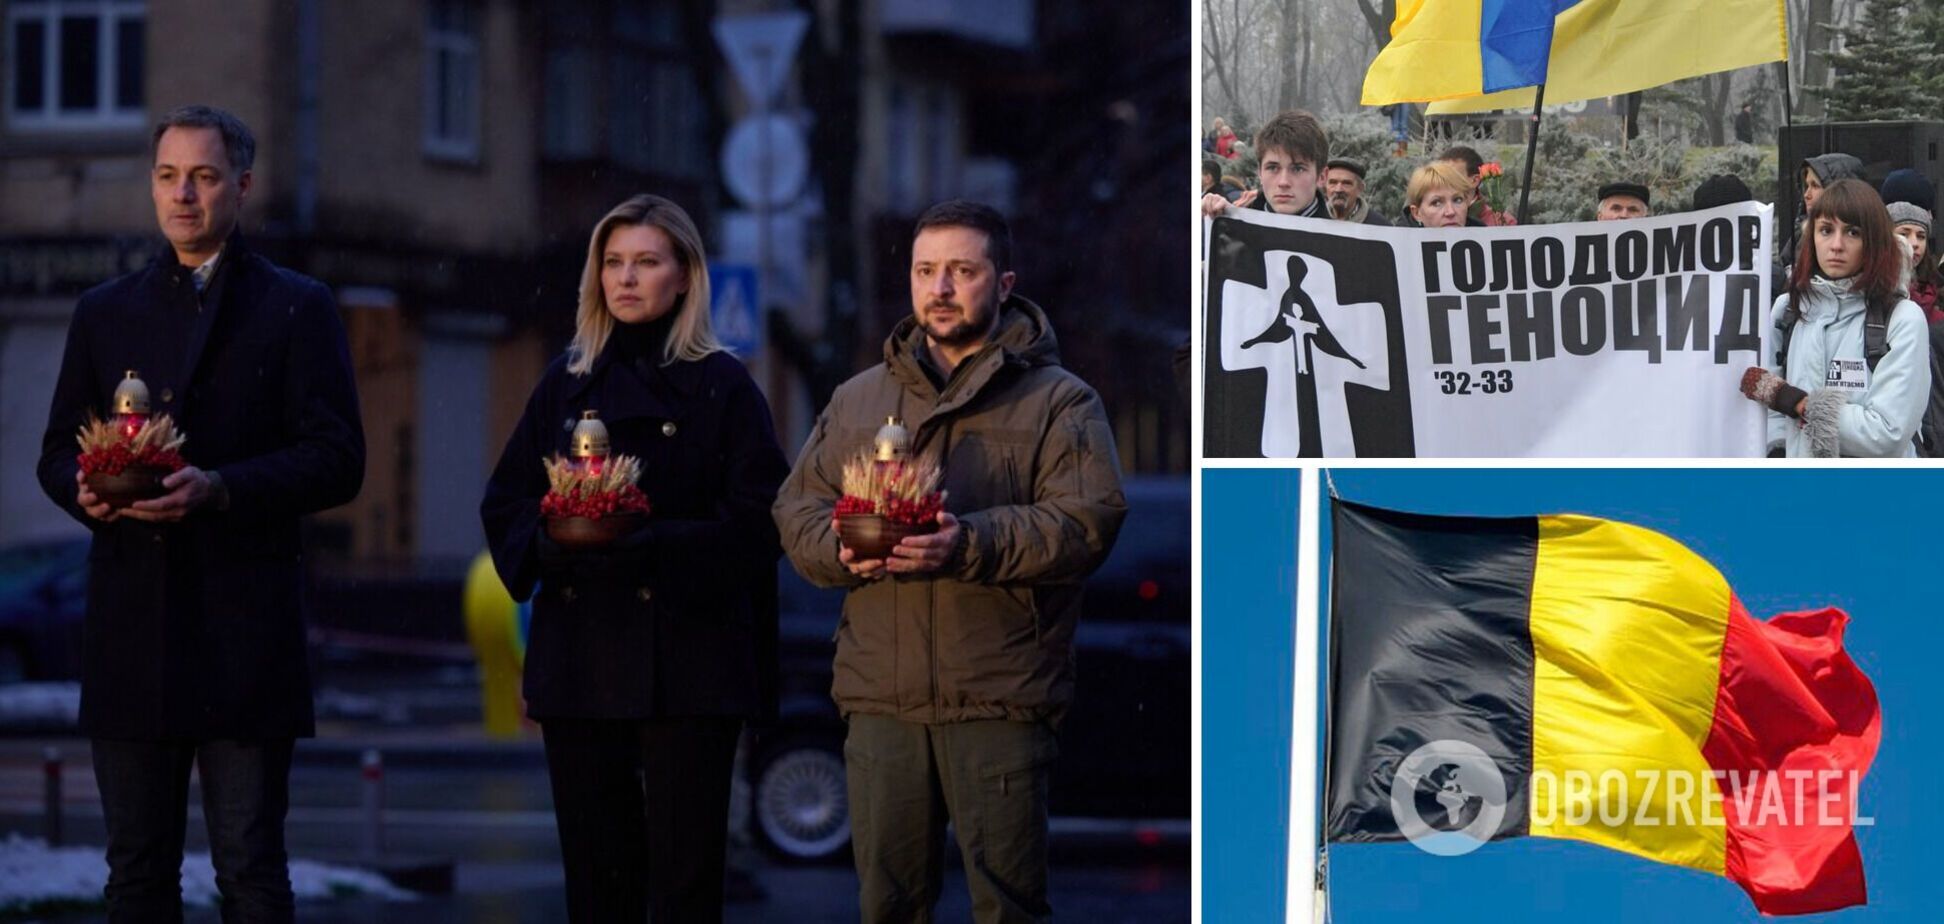 Бельгия признала Голодомор 1932-1933 годов геноцидом украинского народа: Зеленский назвал голосование историческим